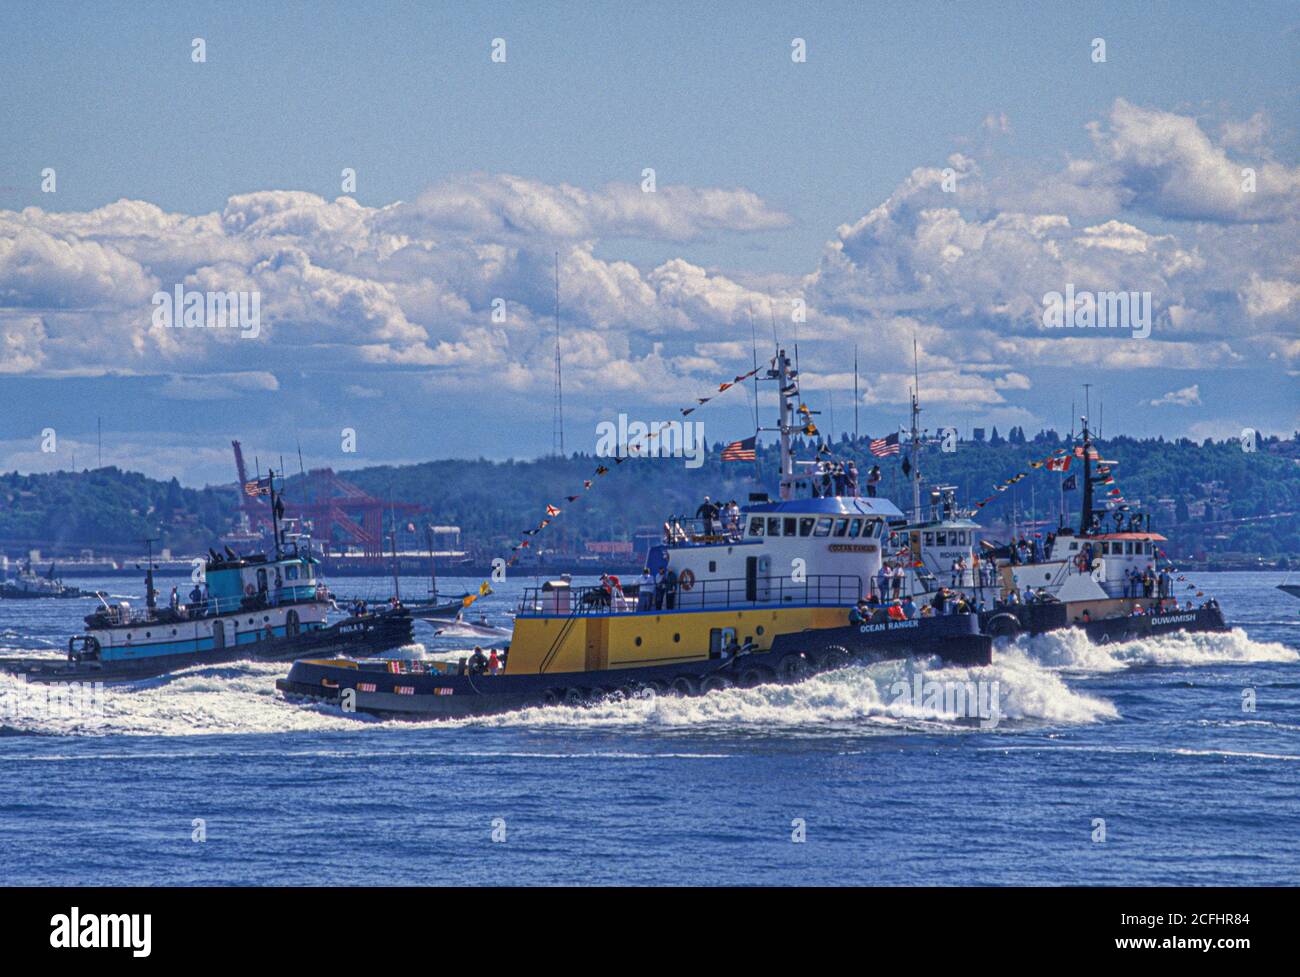 Tugboat races on Puget Sound during Maritime Week, Seattle, Washington USA Stock Photo